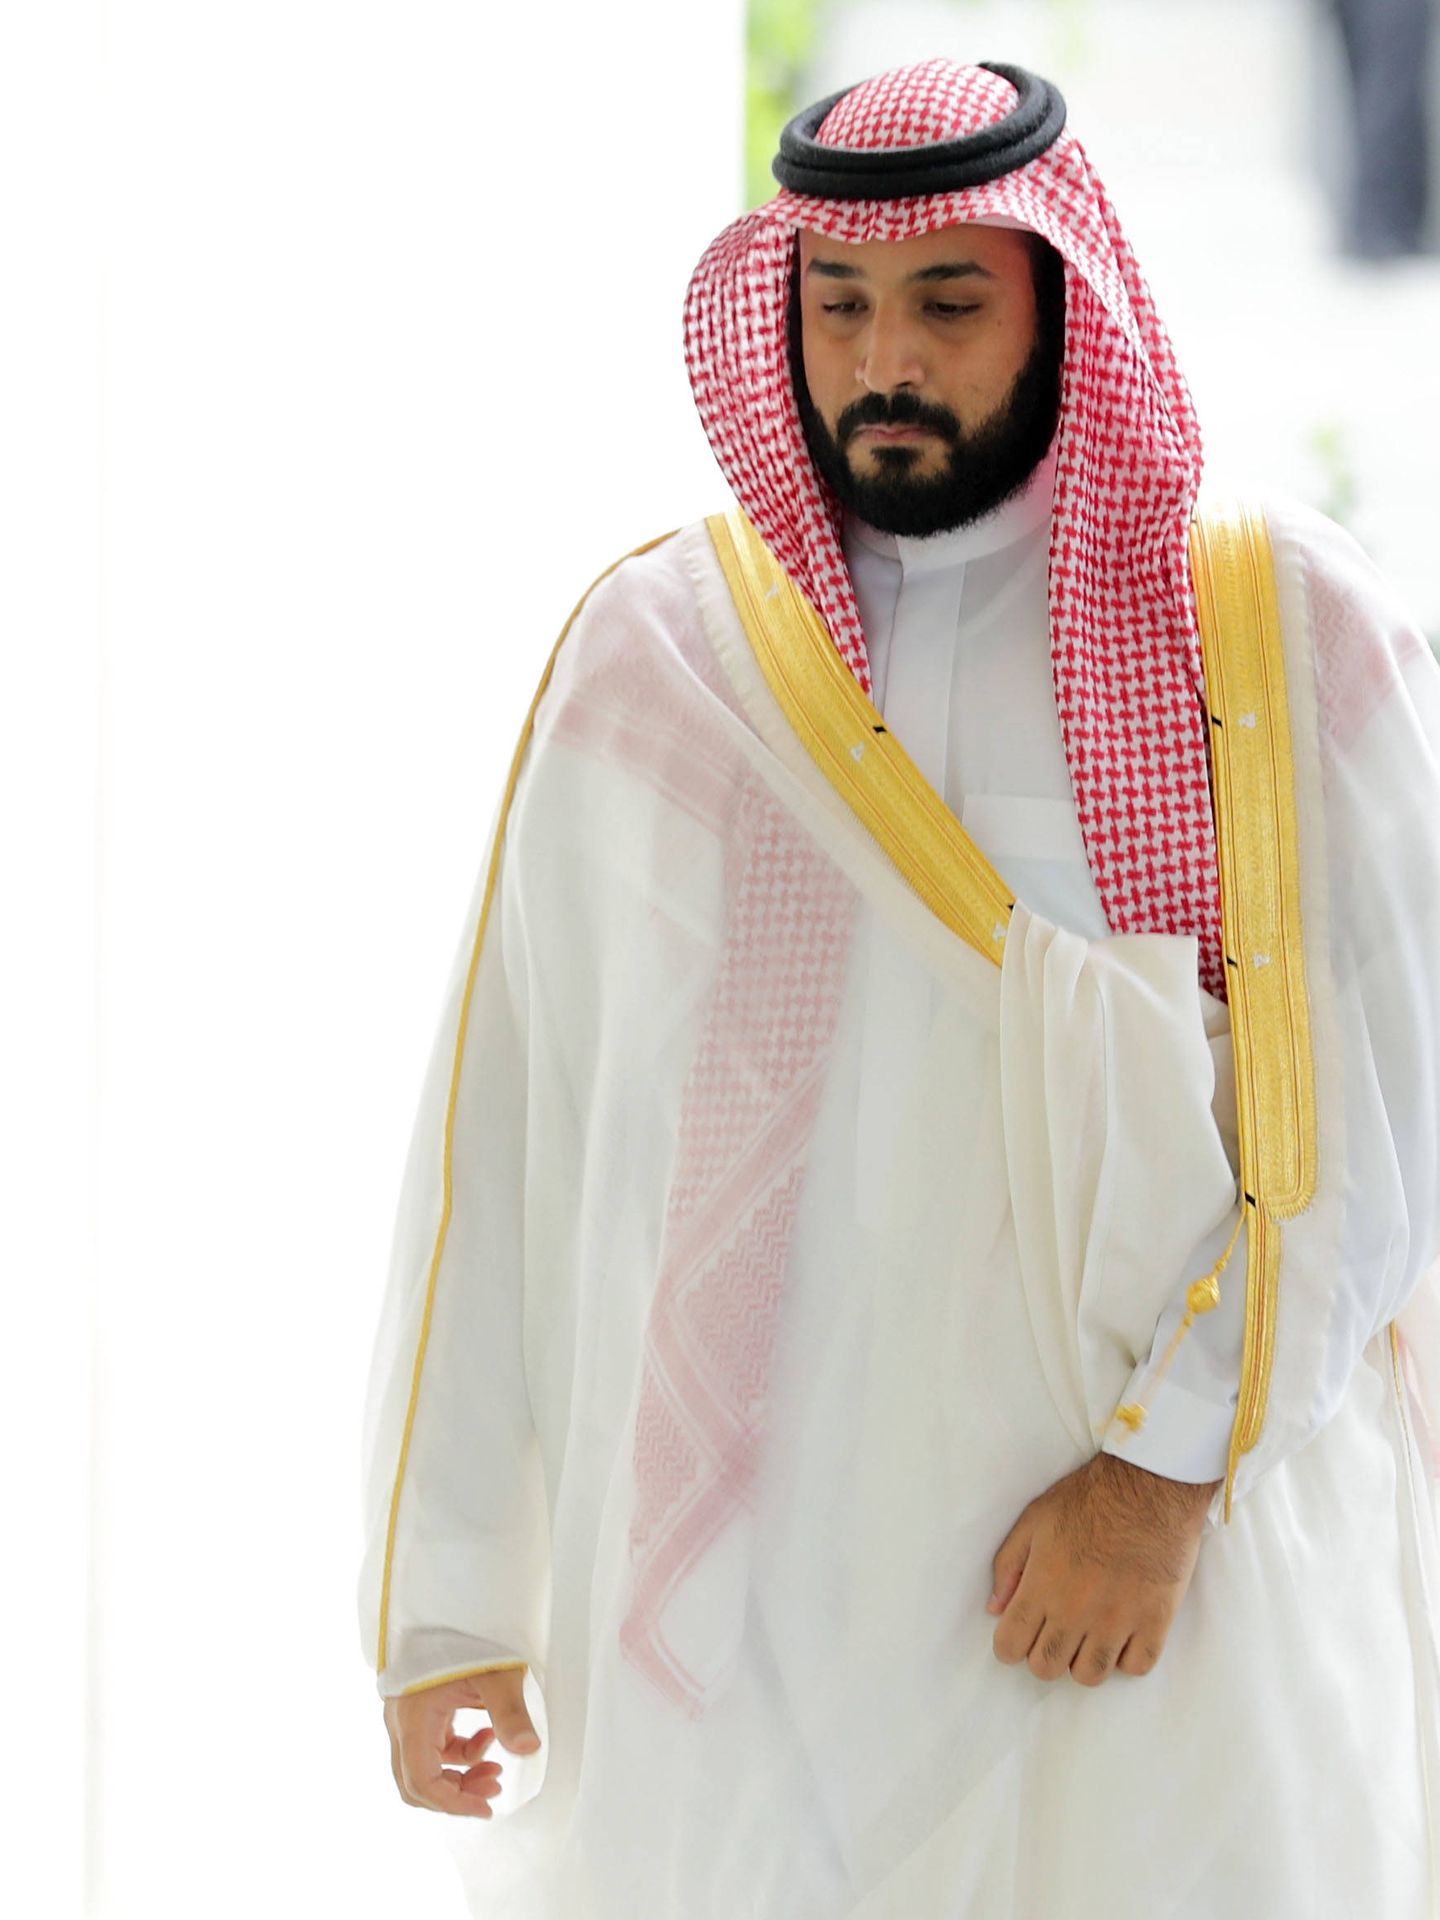  El príncipe saudí ha pasado unos días en Madrid. (Getty)